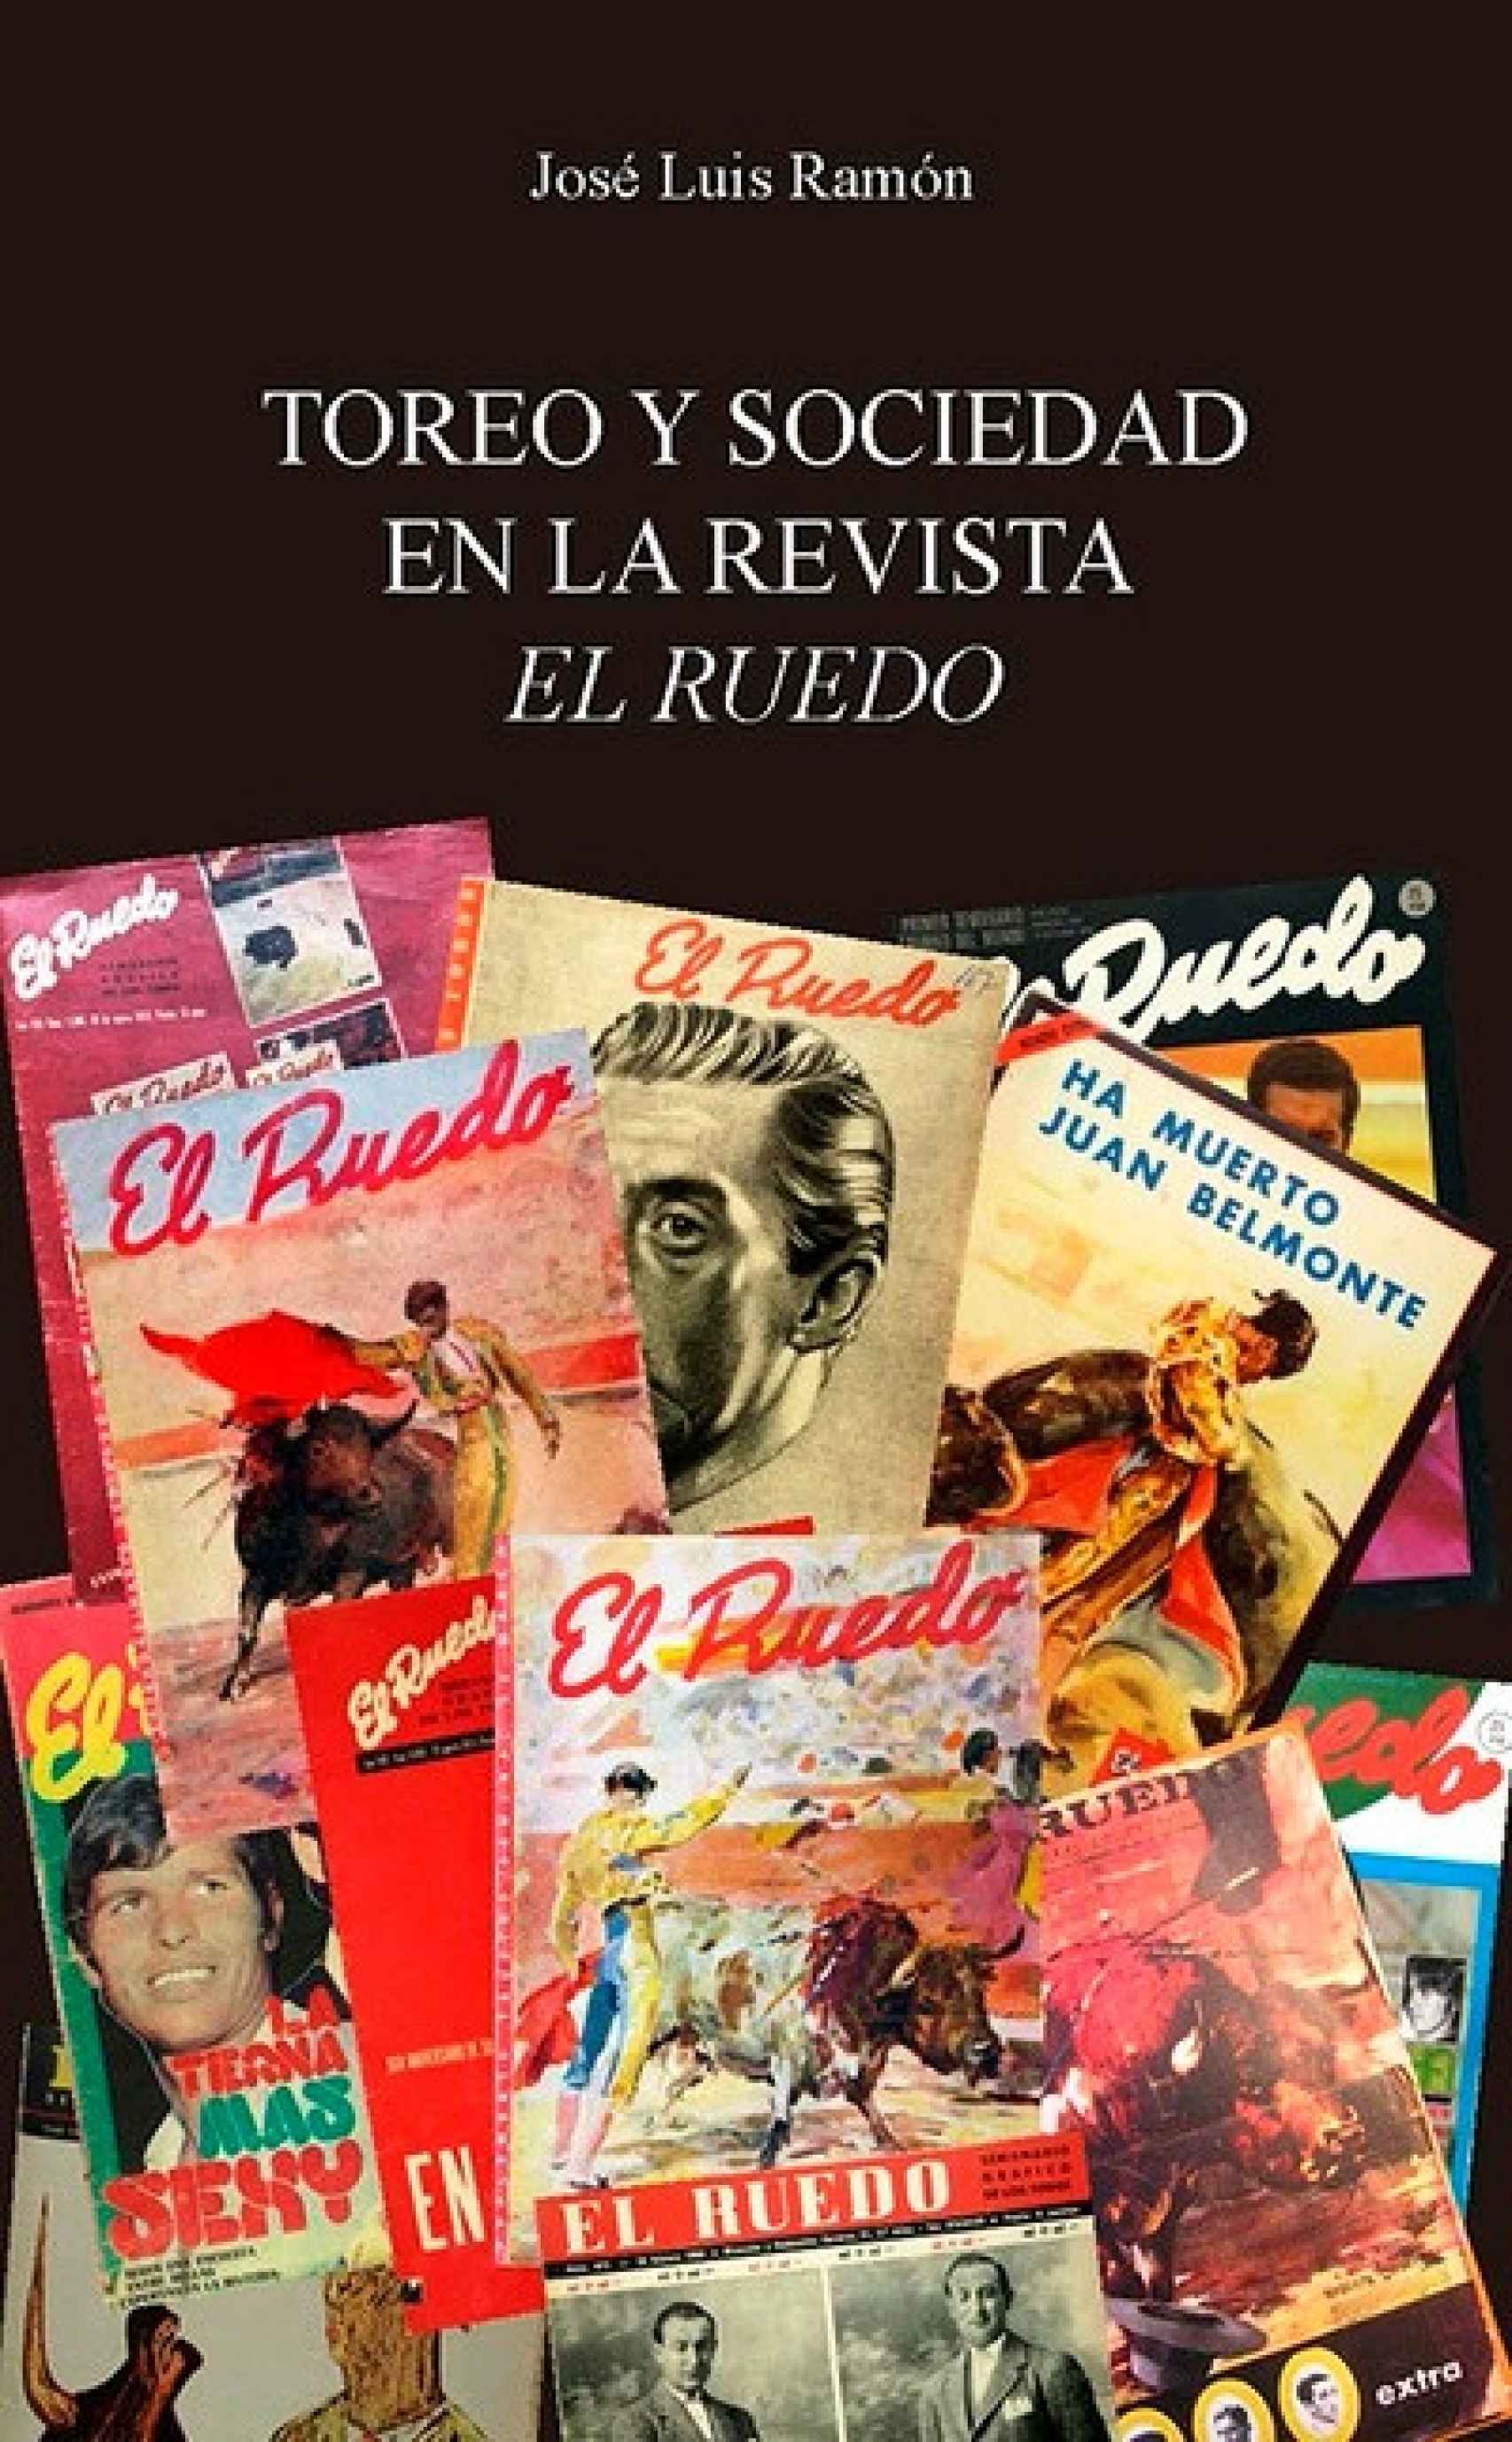 Presentación del libro “Toreo y sociedad en la revista El Ruedo (Foto cedida)